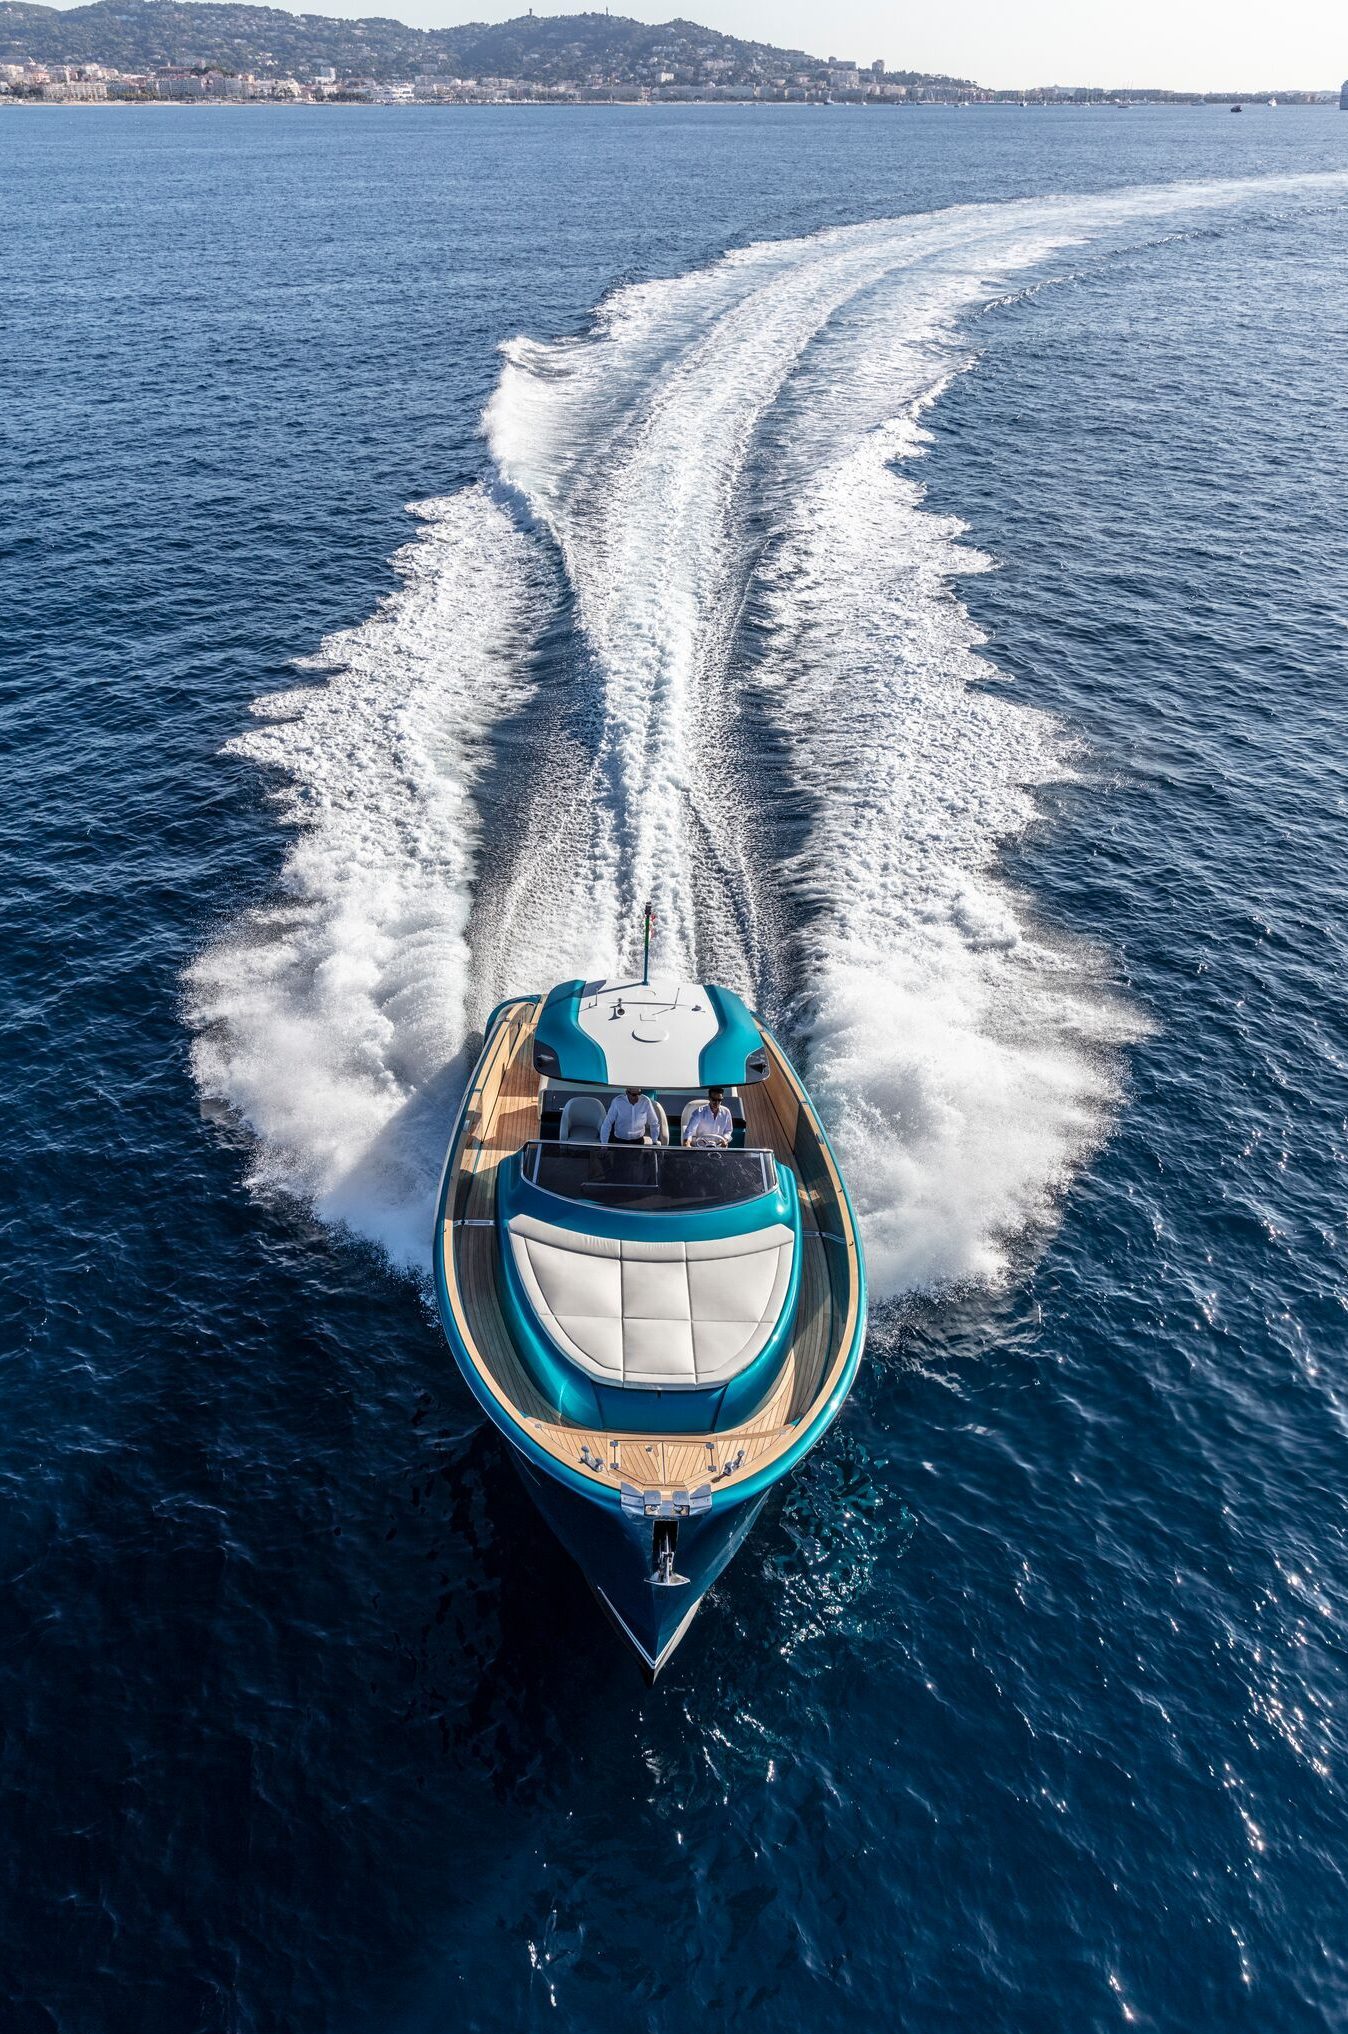 yacht sales in dubai